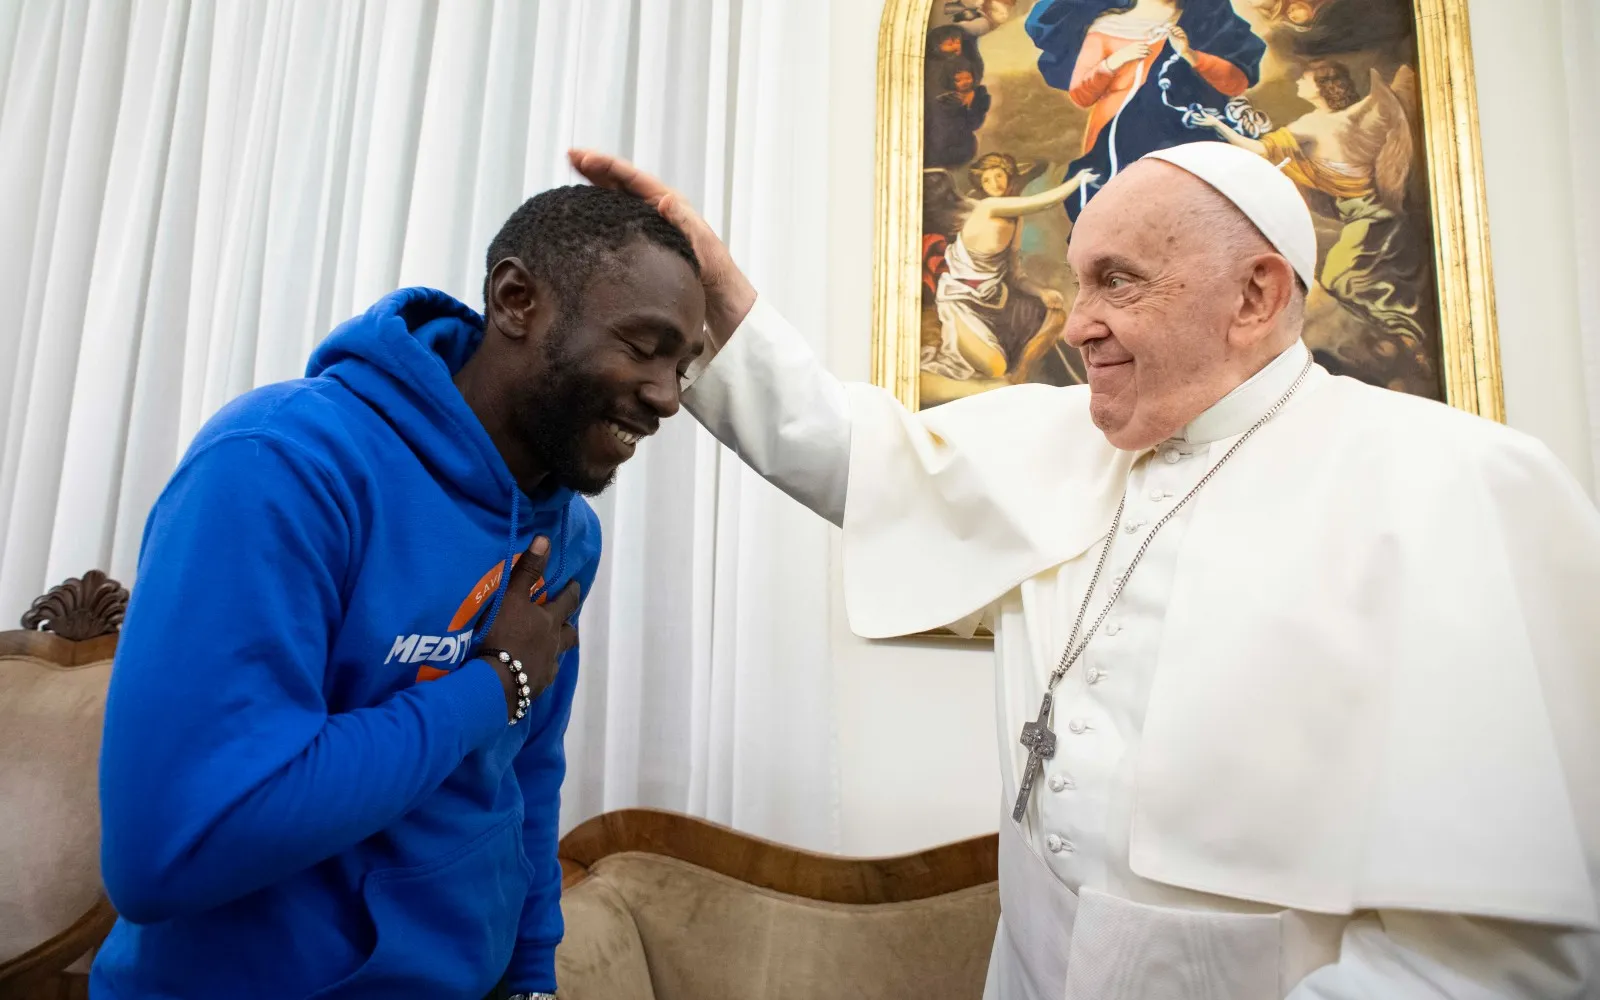 El Papa Francisco bendice a "Pato" en el Vaticano?w=200&h=150